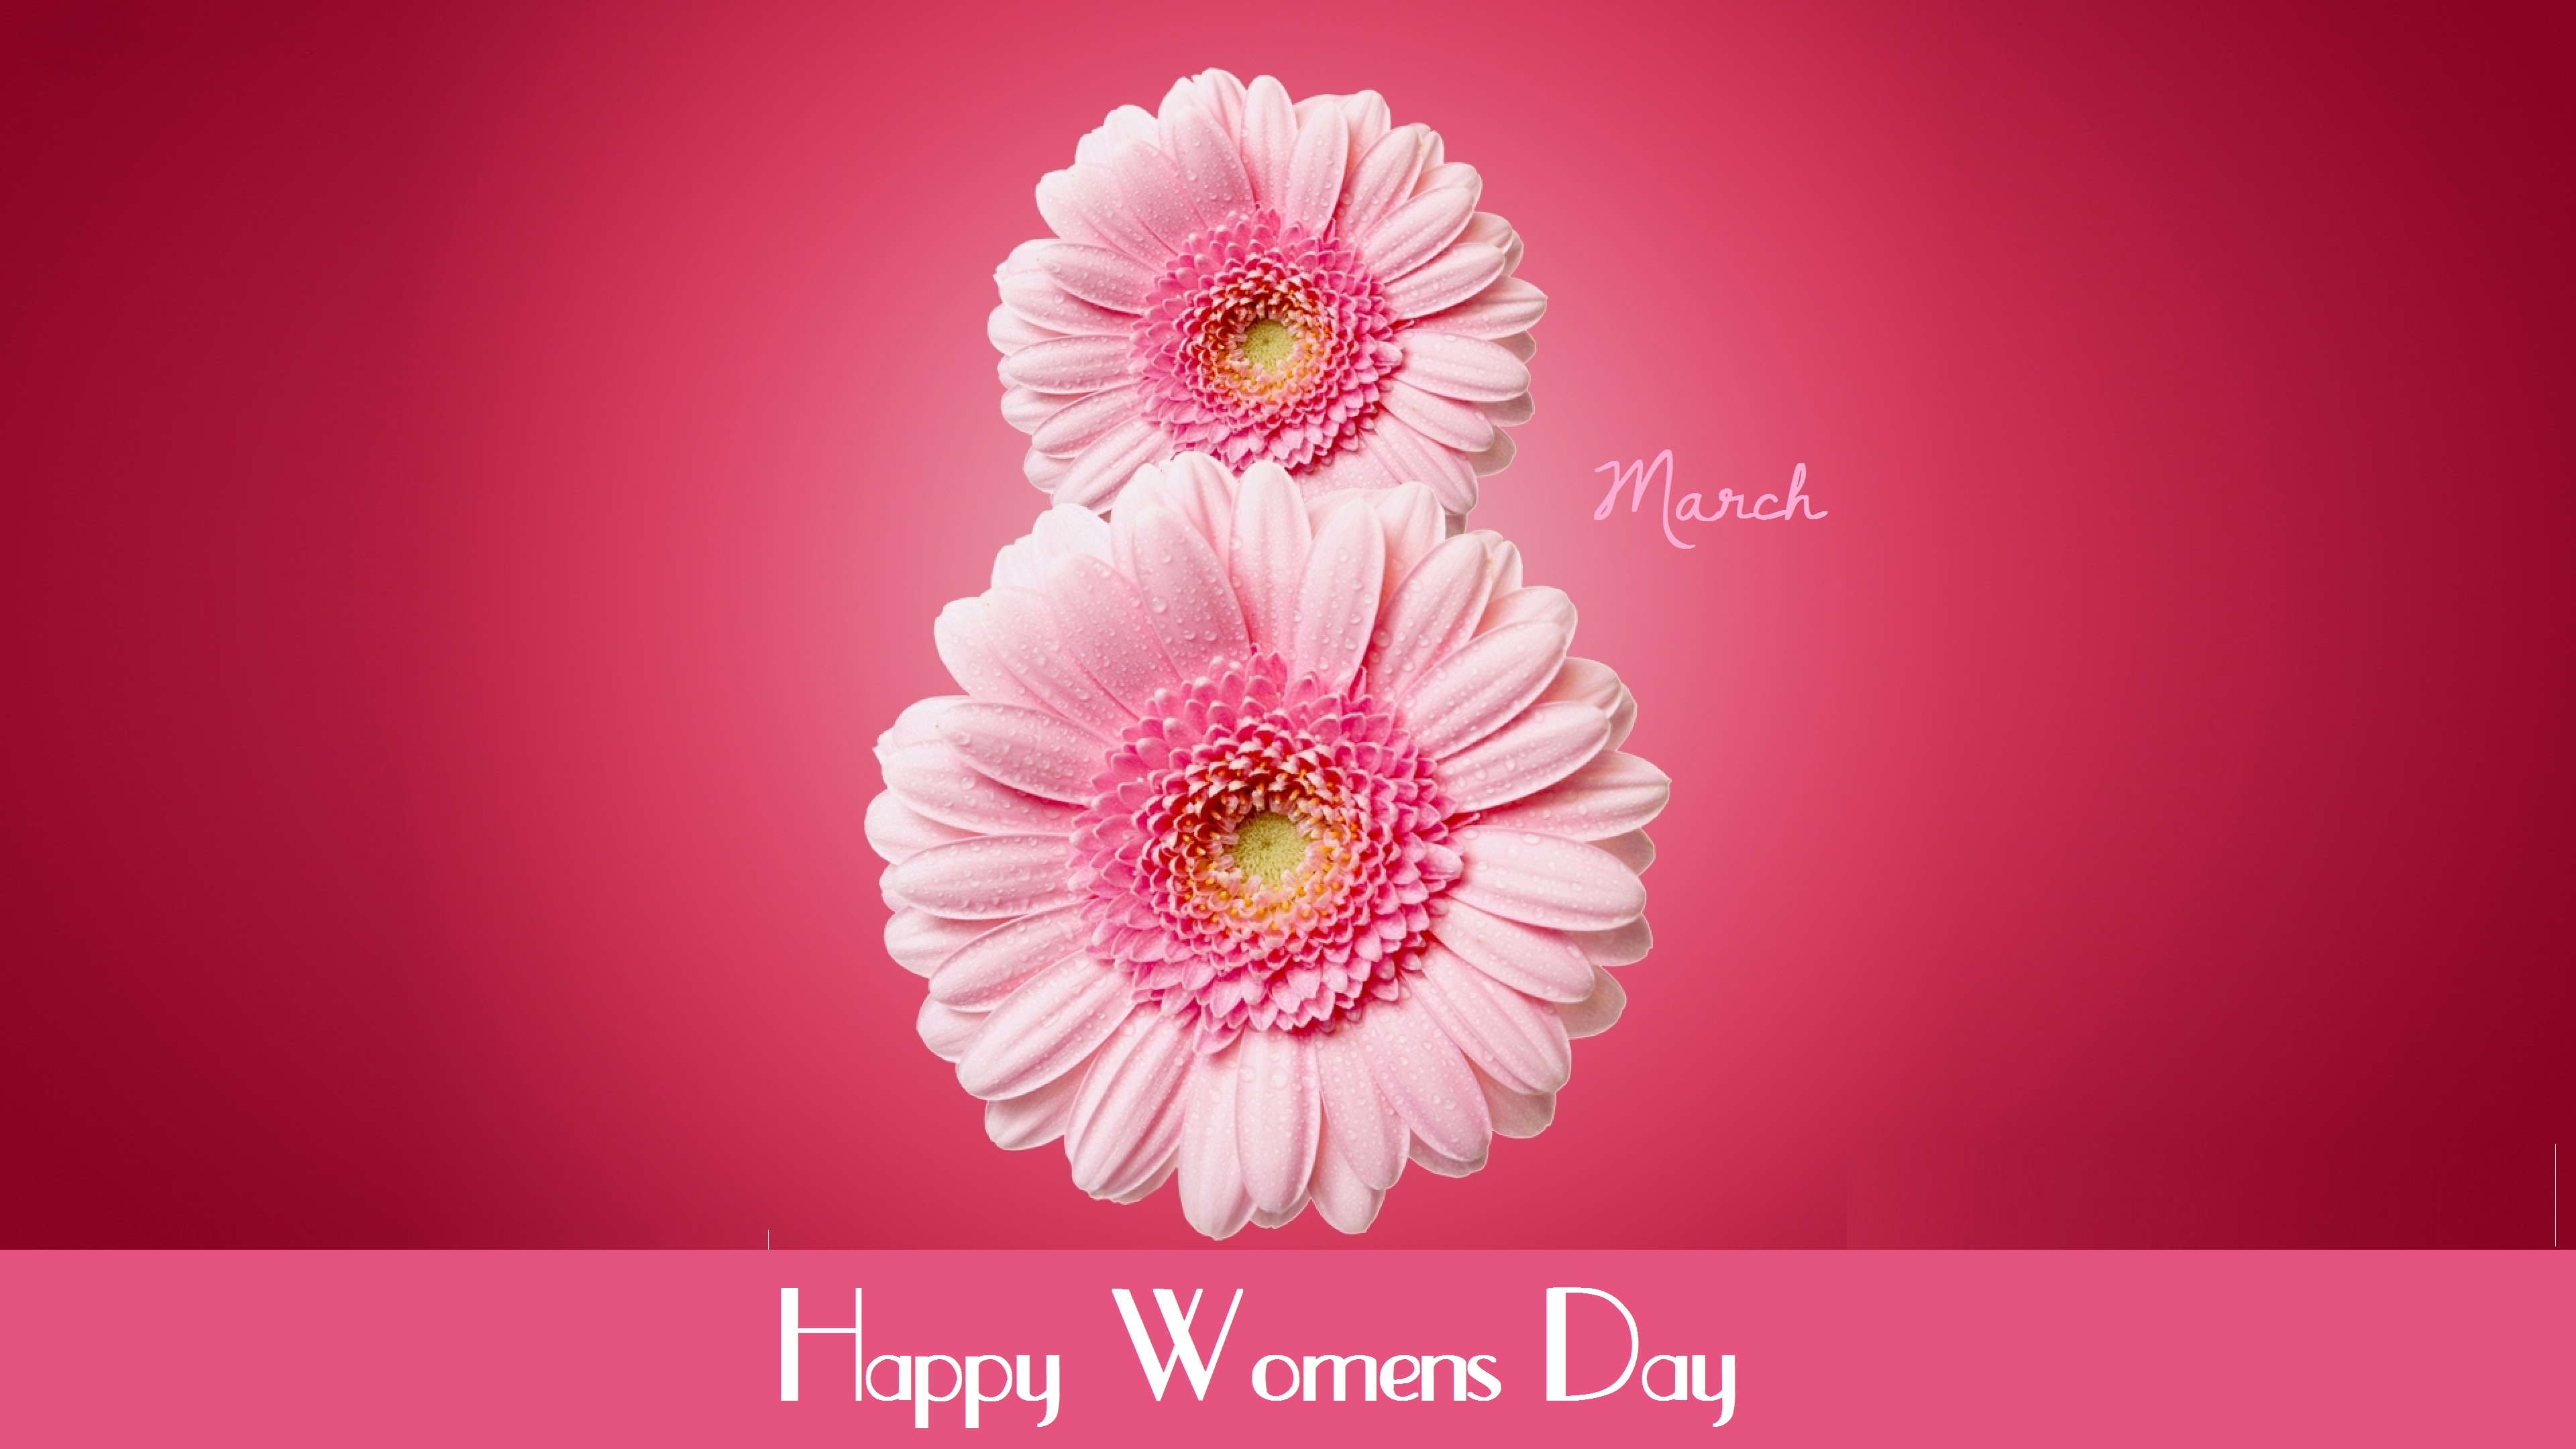 Khung ảnh hoa mừng ngày quốc tế phụ nữ 83